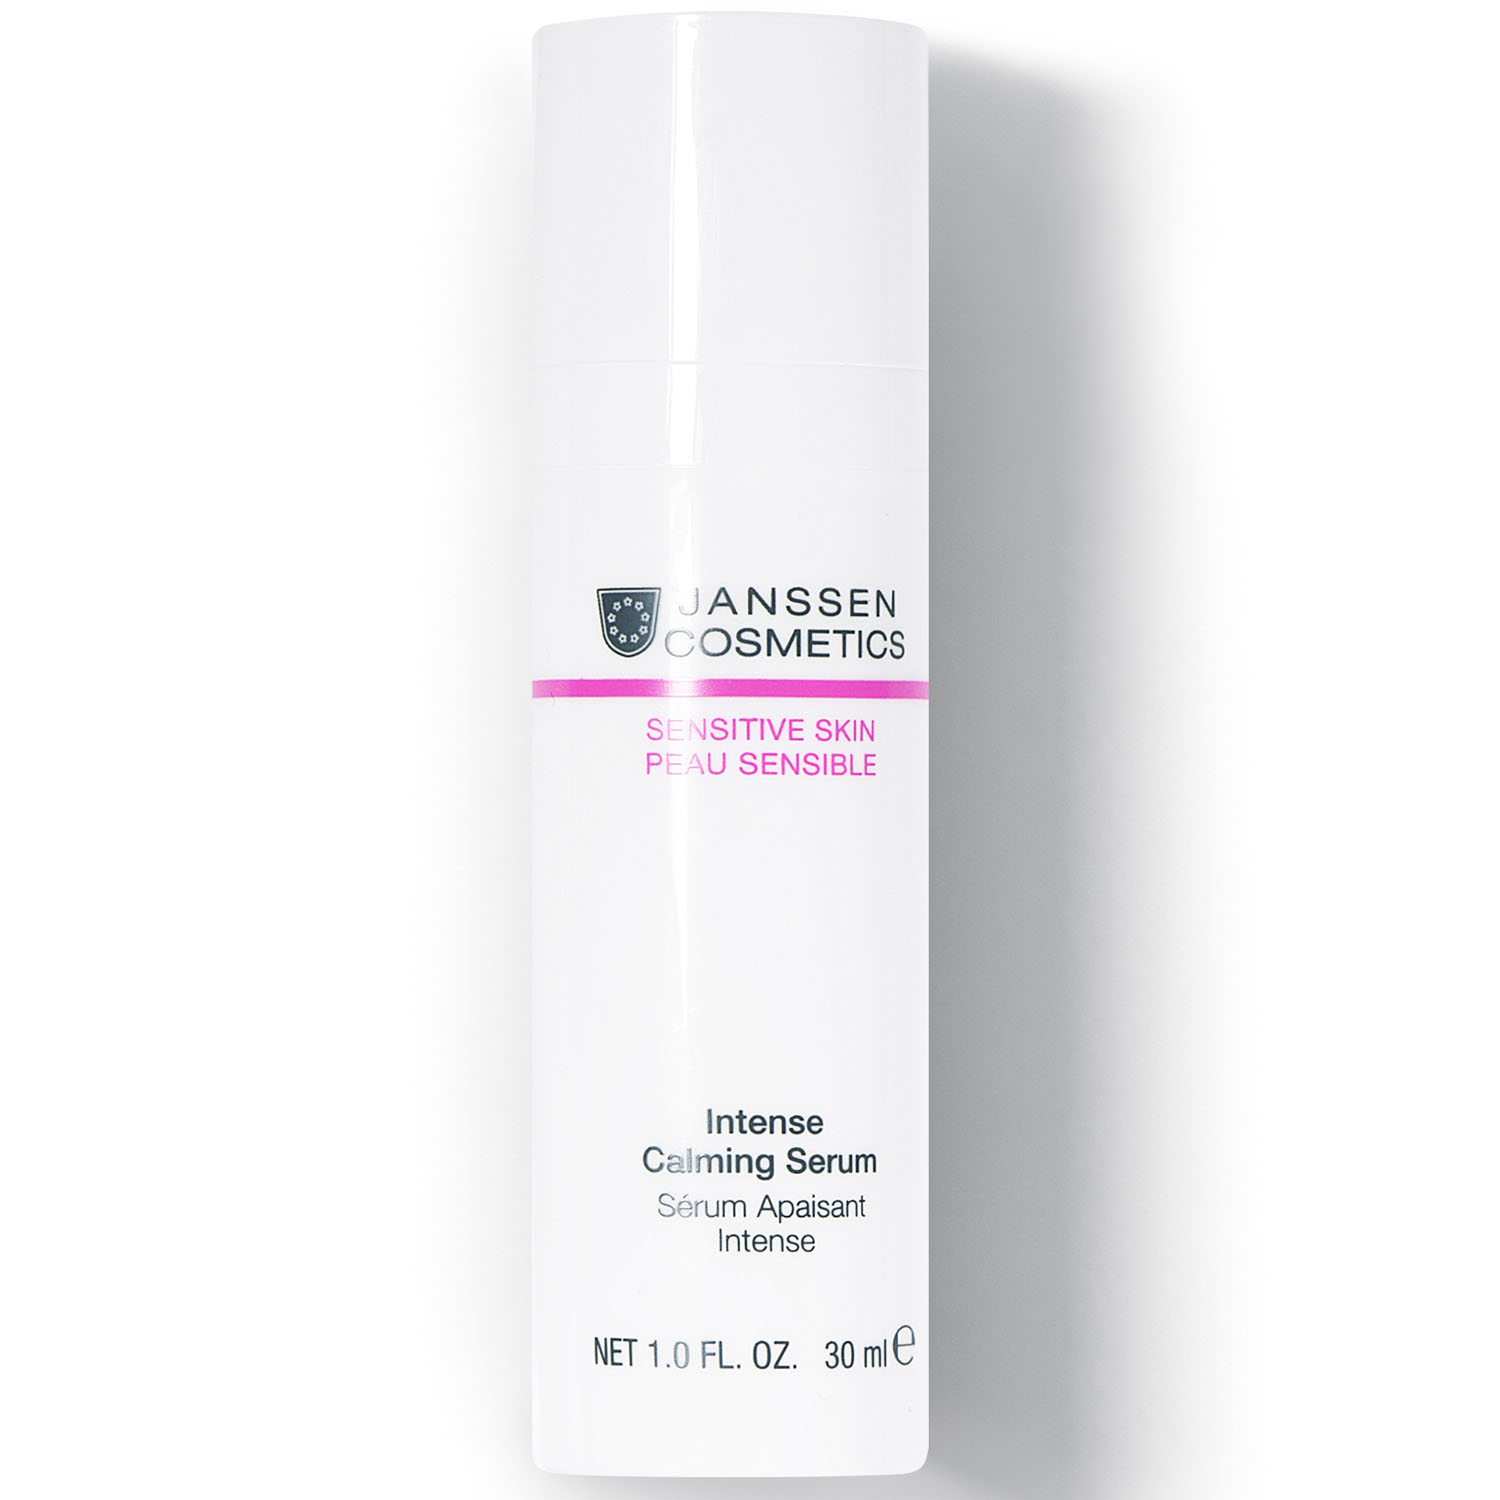 Janssen Cosmetics Успокаивающая сыворотка интенсивного действия Intense Calming Serum, 30 мл (Janssen Cosmetics, Sensitive skin) фотографии